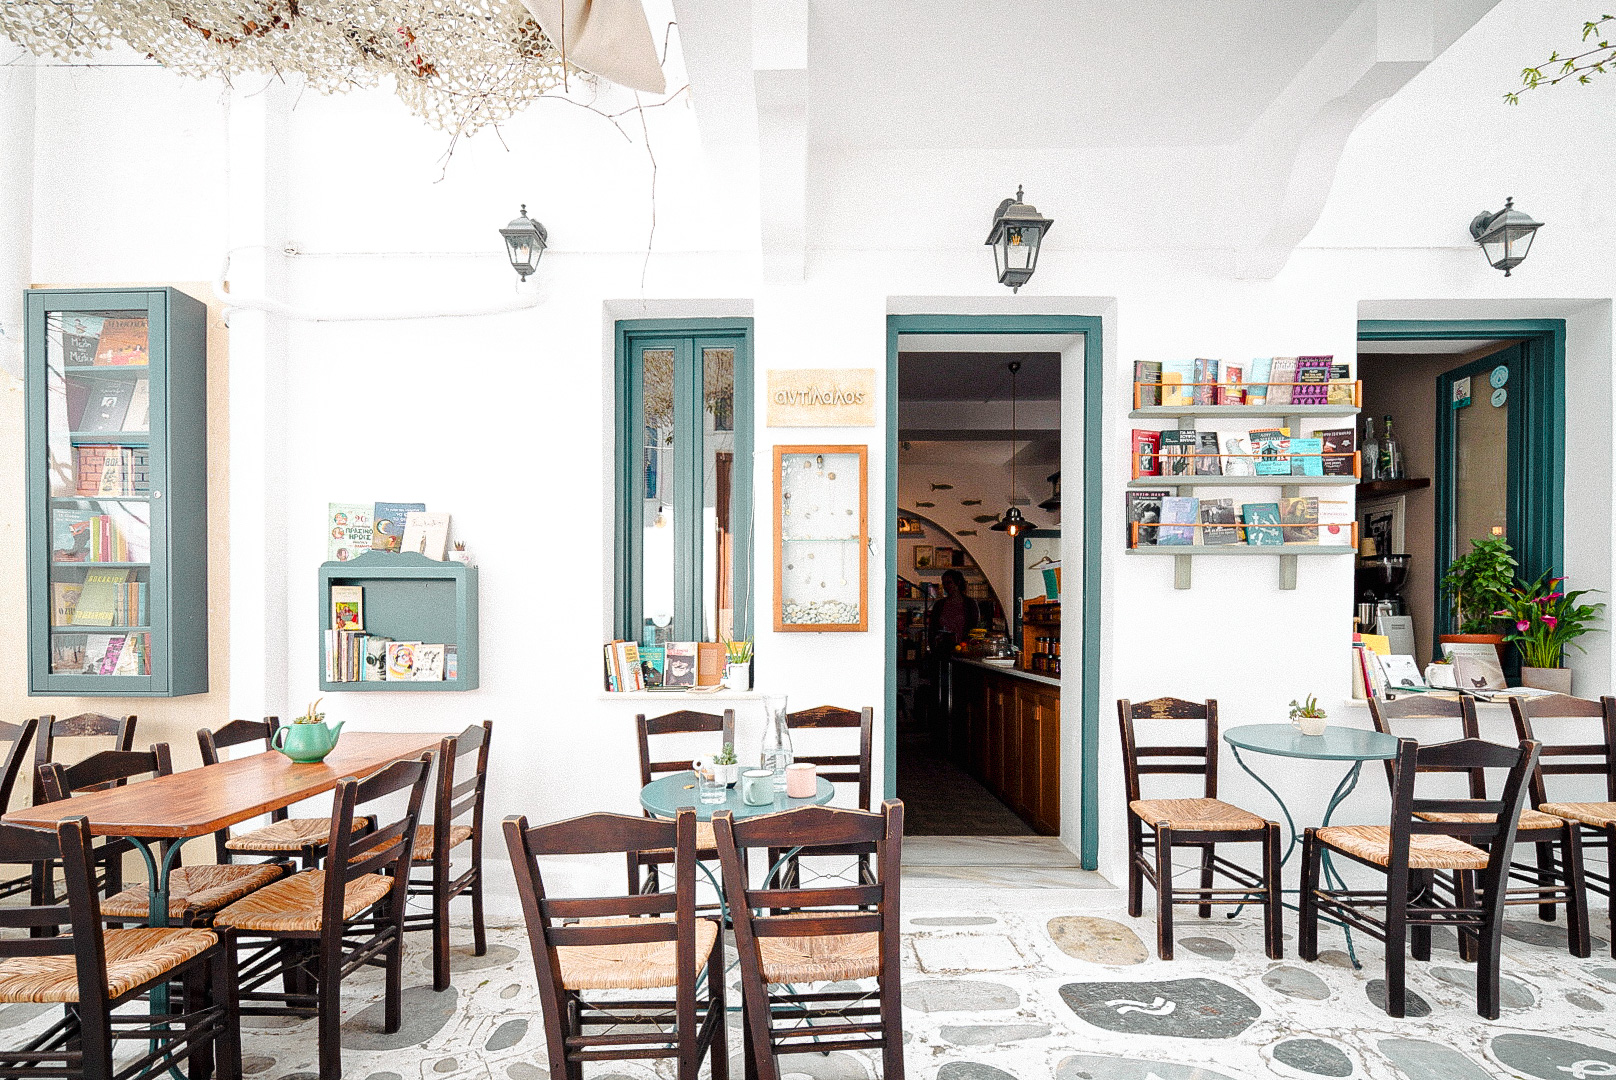 Αυτά είναι τα ωραιότερα βιβλιοπωλεία στα ελληνικά νησιά μας